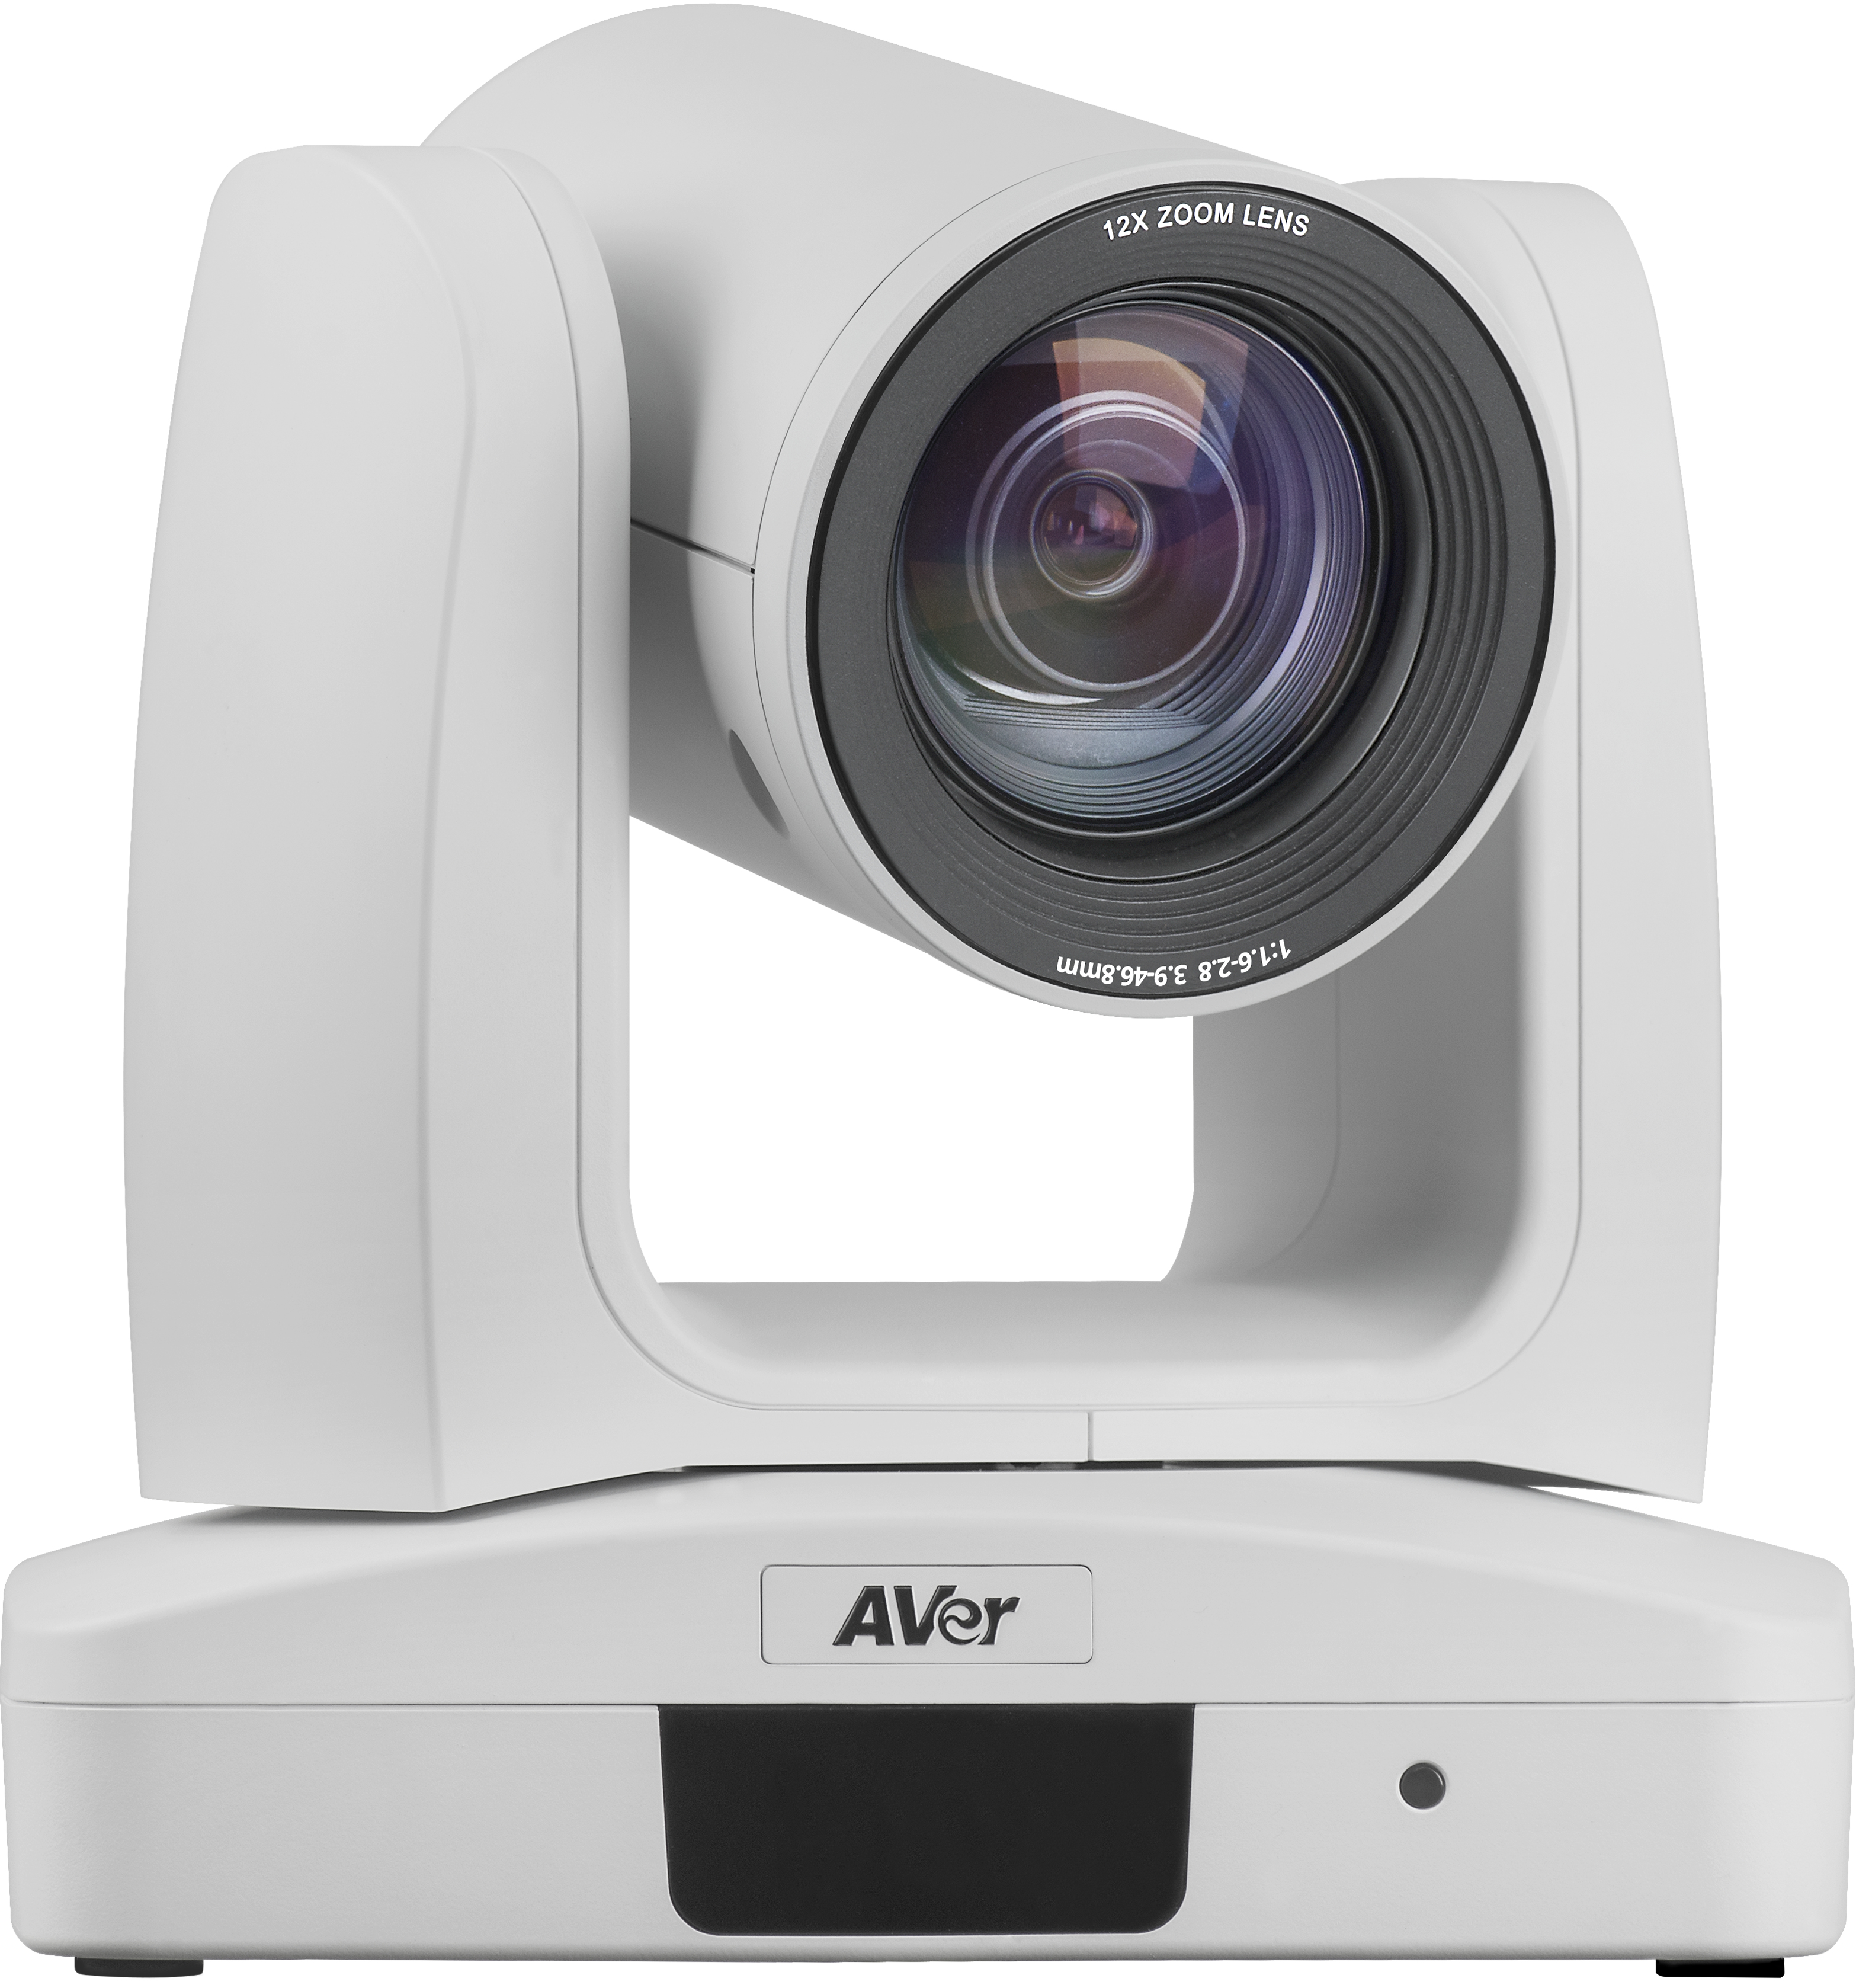 AVer PTZ310 Professional - Netzwerk-Überwachungskamera